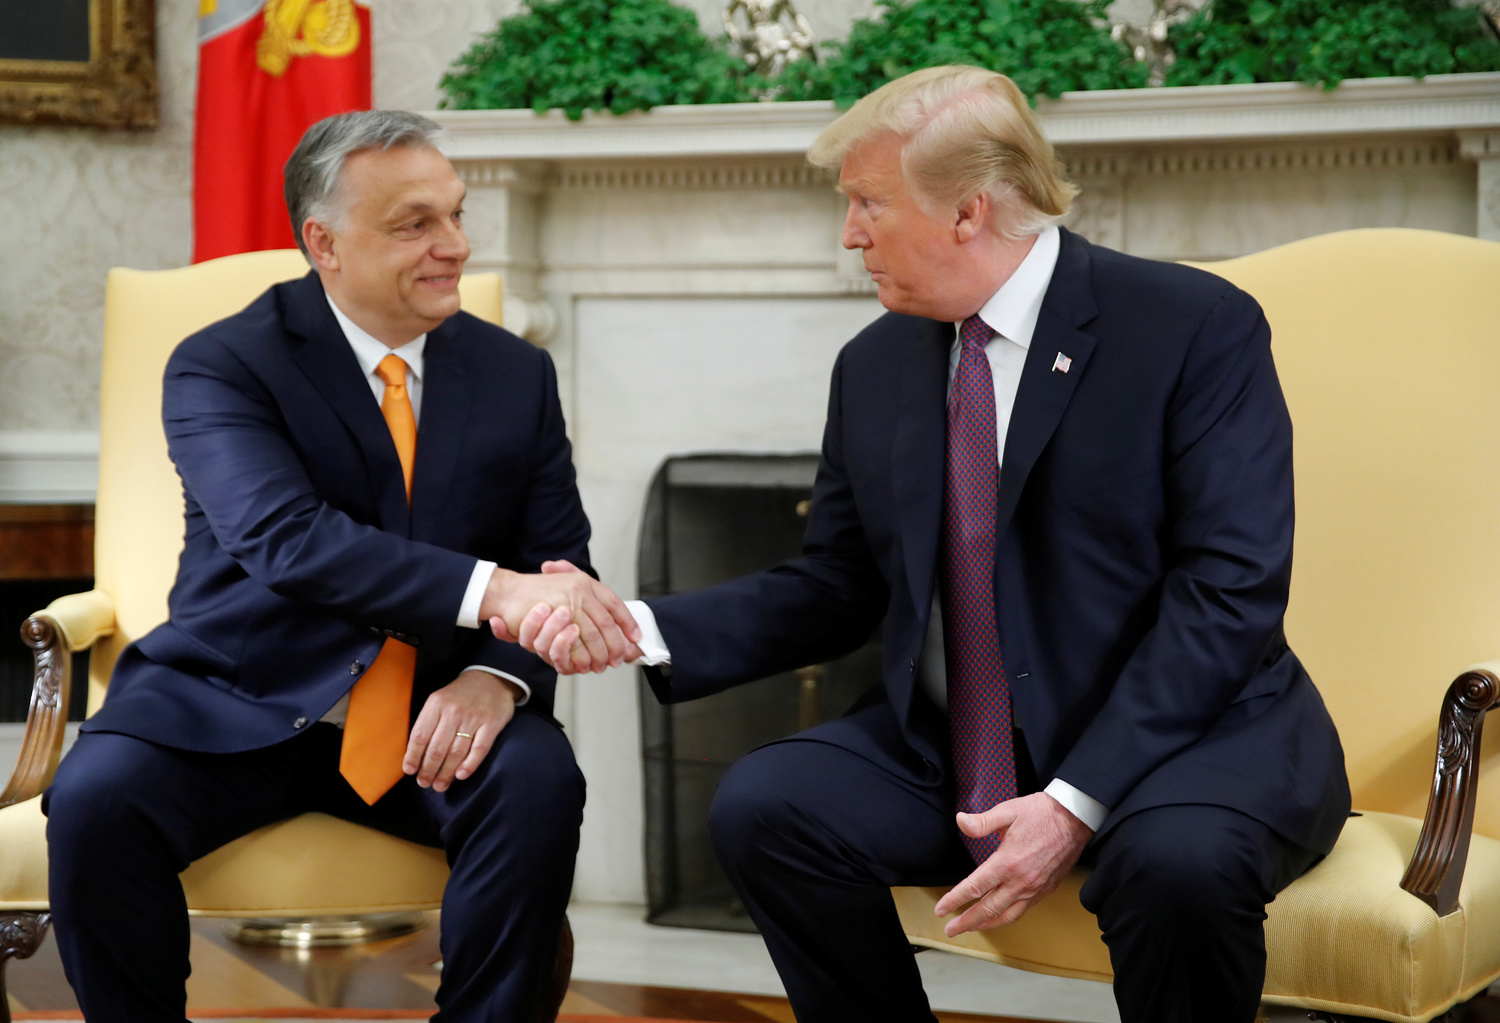 Il Presidente degli Stati Uniti Donald Trump saluta il Primo Ministro ungherese Viktor Orbán nell'ufficio ovale della Casa Bianca a Washington, Stati Uniti, 13 maggio 2019. REUTERS/Carlos Barria